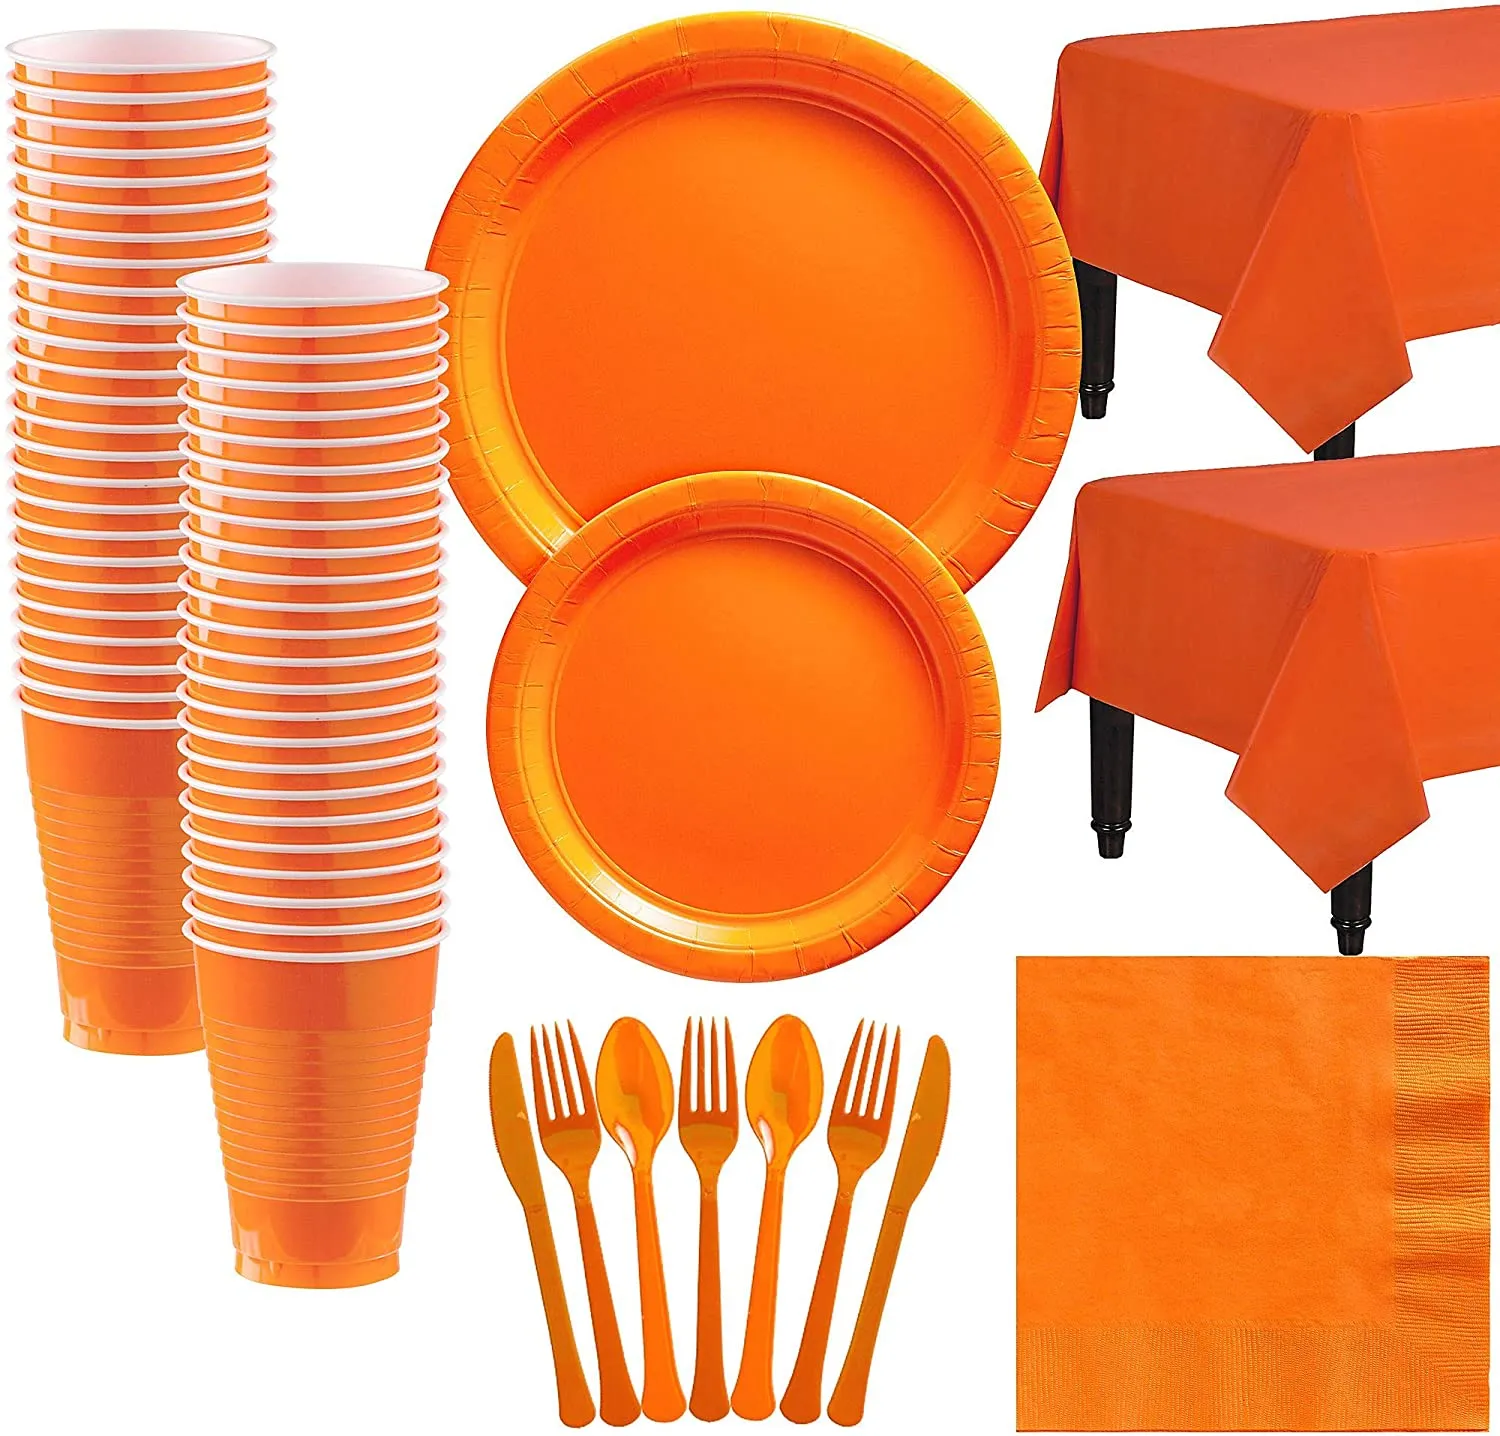 Orange verfügbar Plastik Party Tabelle Cup Plate Serviette für Kinder Geburtstagsfeier Halloween Decor Party Dinner Supplies Geschenk Geschenk